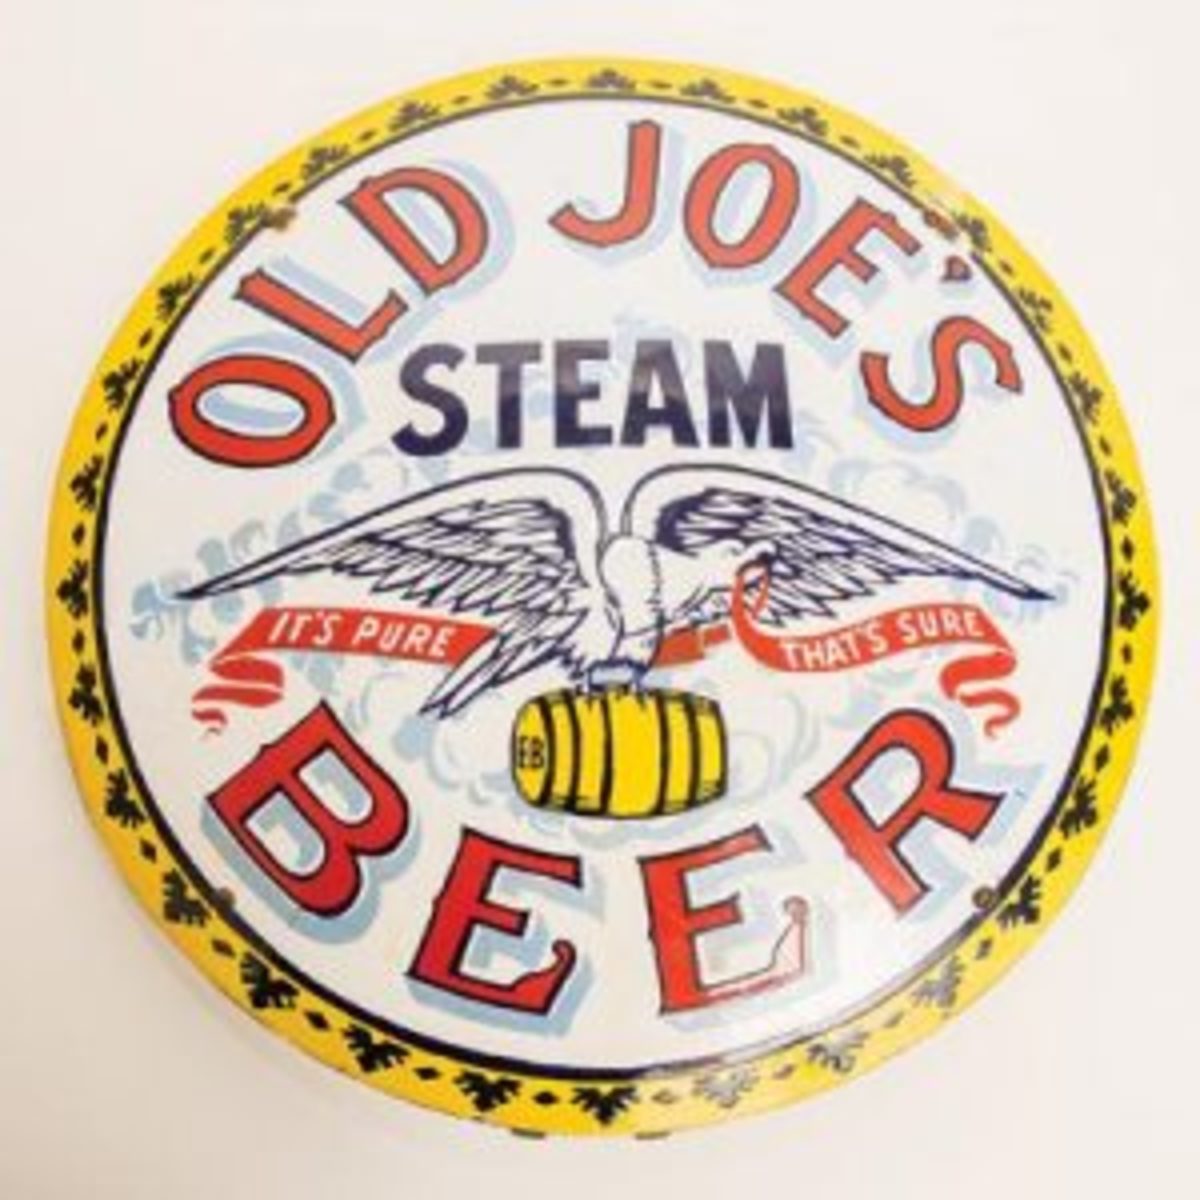 Old Joe’s Steam Beer sign